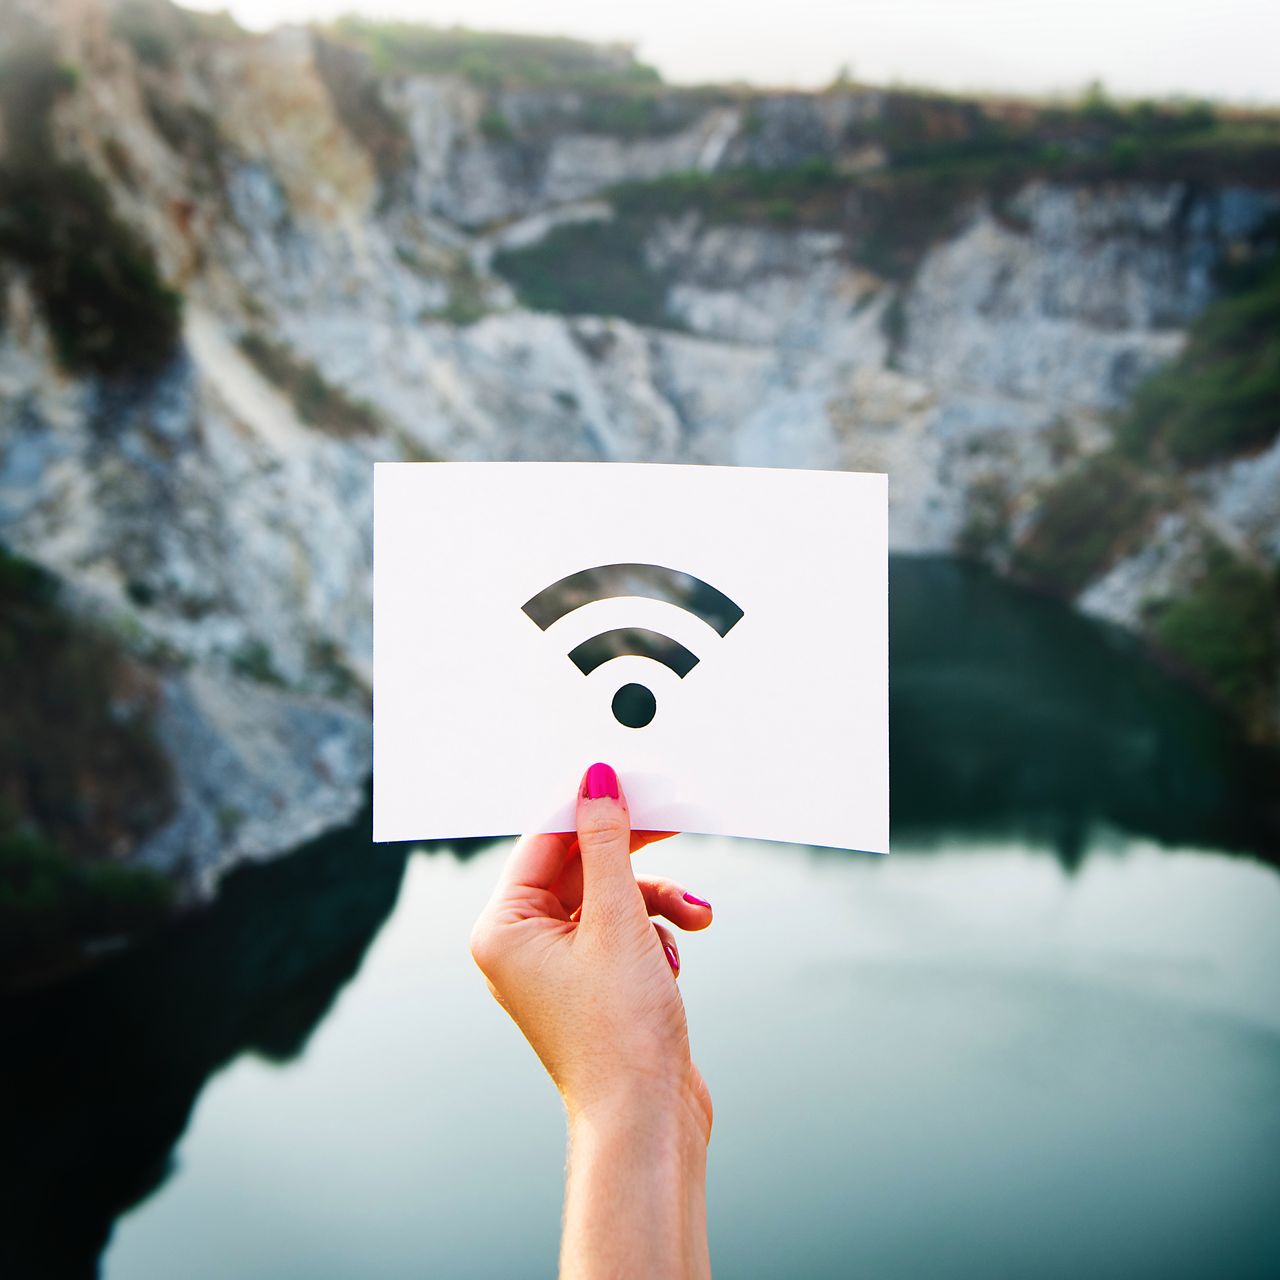 WiFi może działać jako wykrywacz metalu, ale lepiej żeby nie był to standard bezpieczeństwa